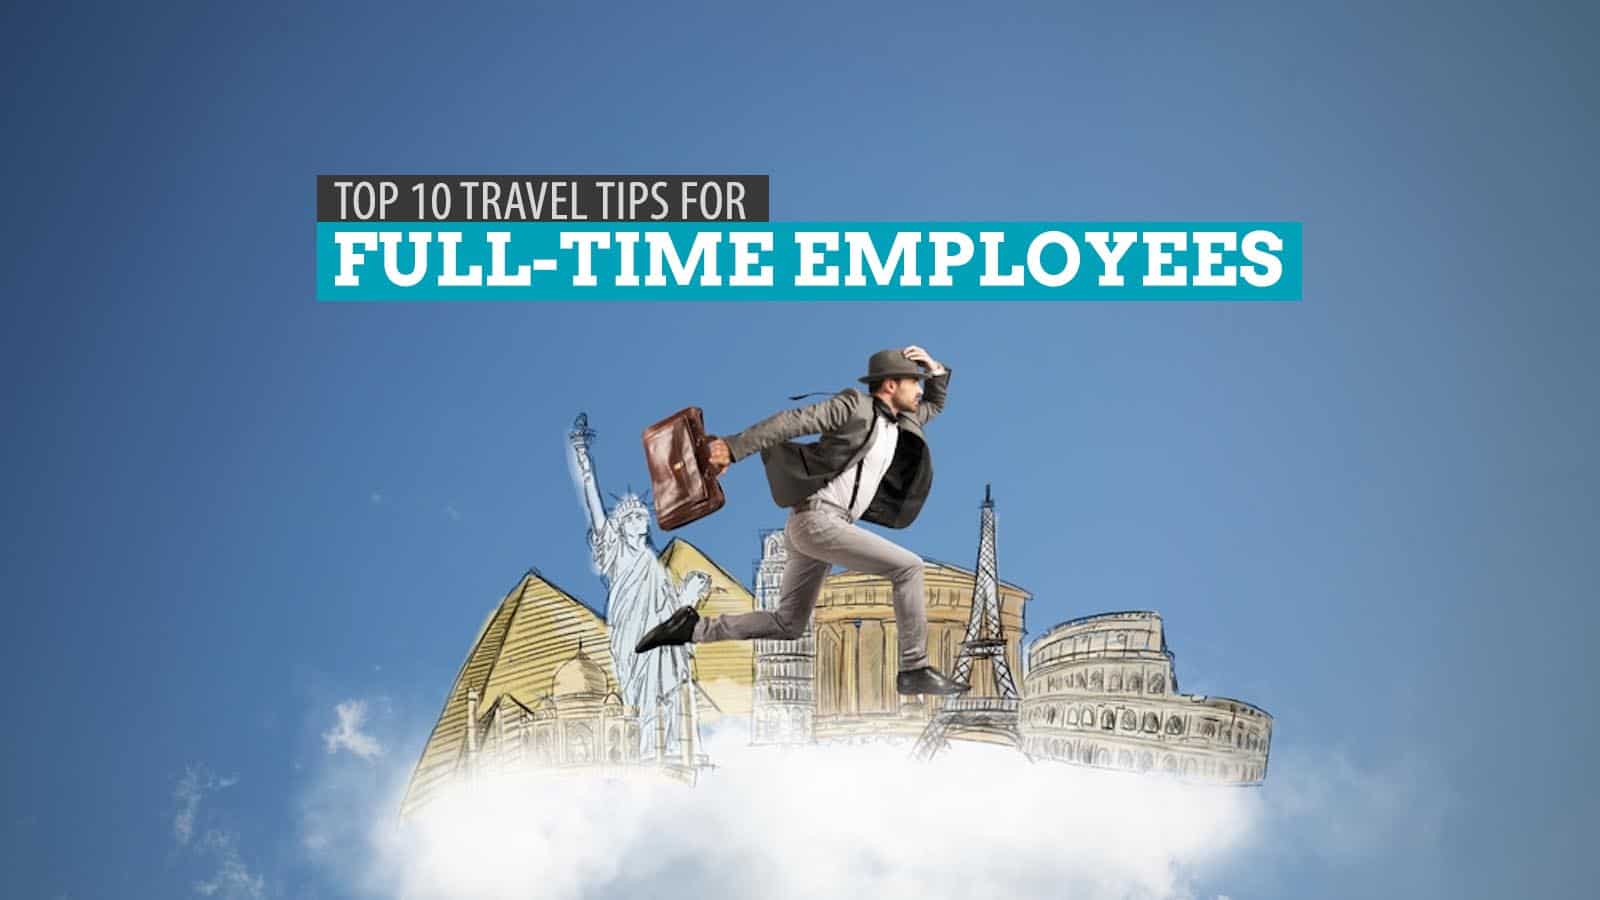 给全职员工的10个建议:如何更便宜更明智地旅行